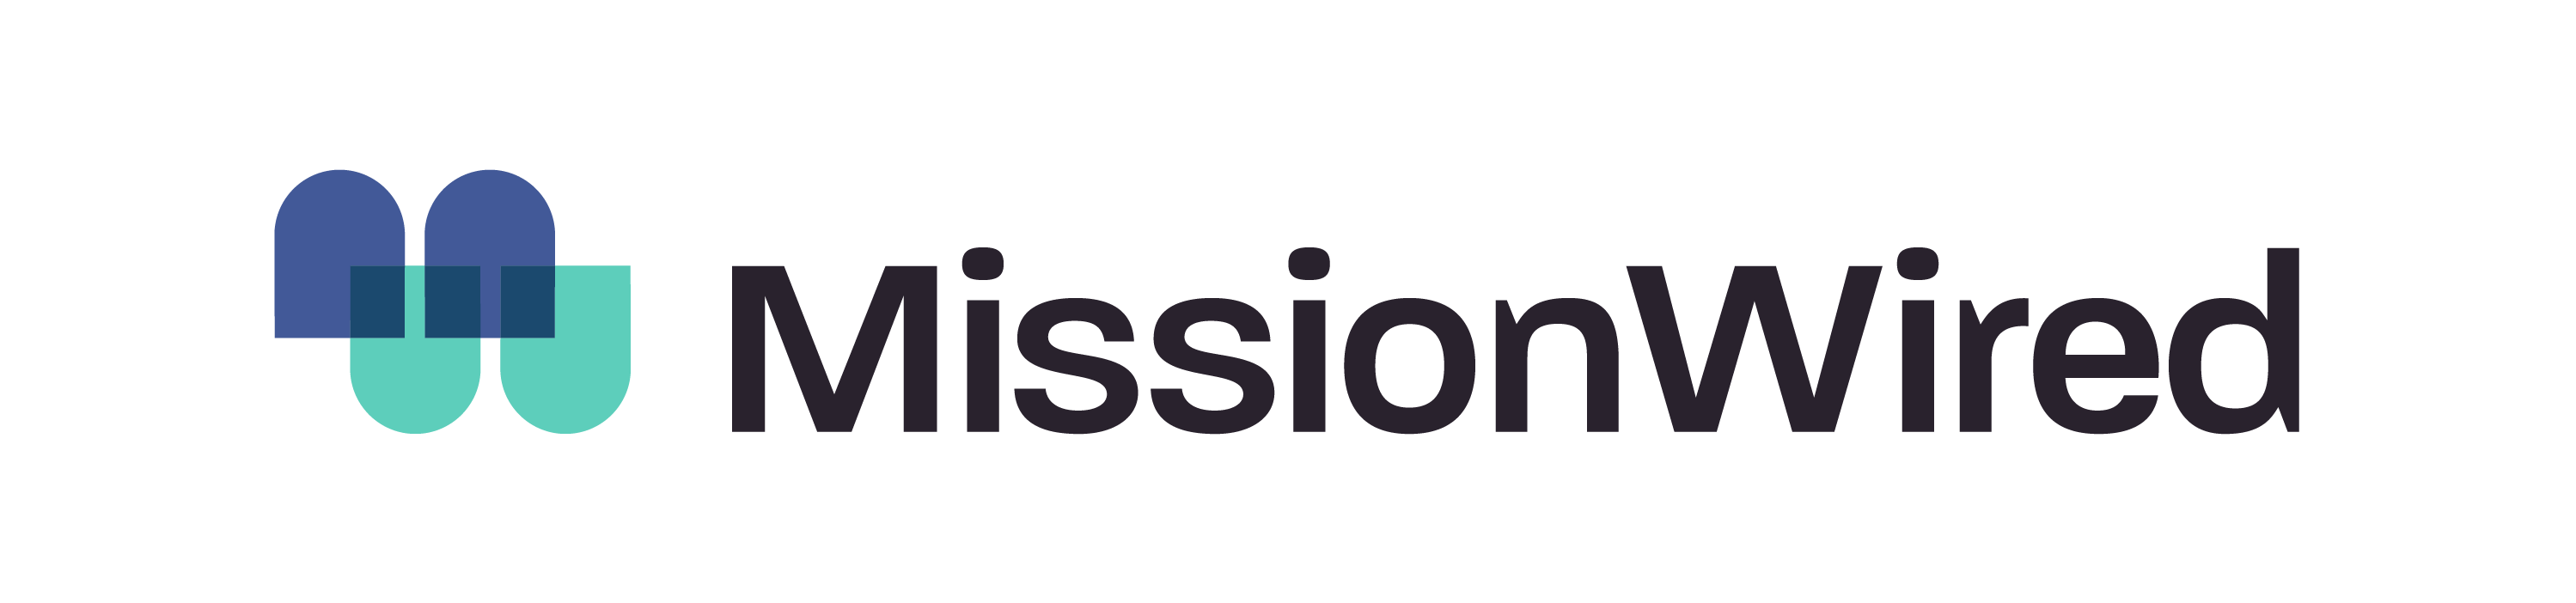 MissionWired logo